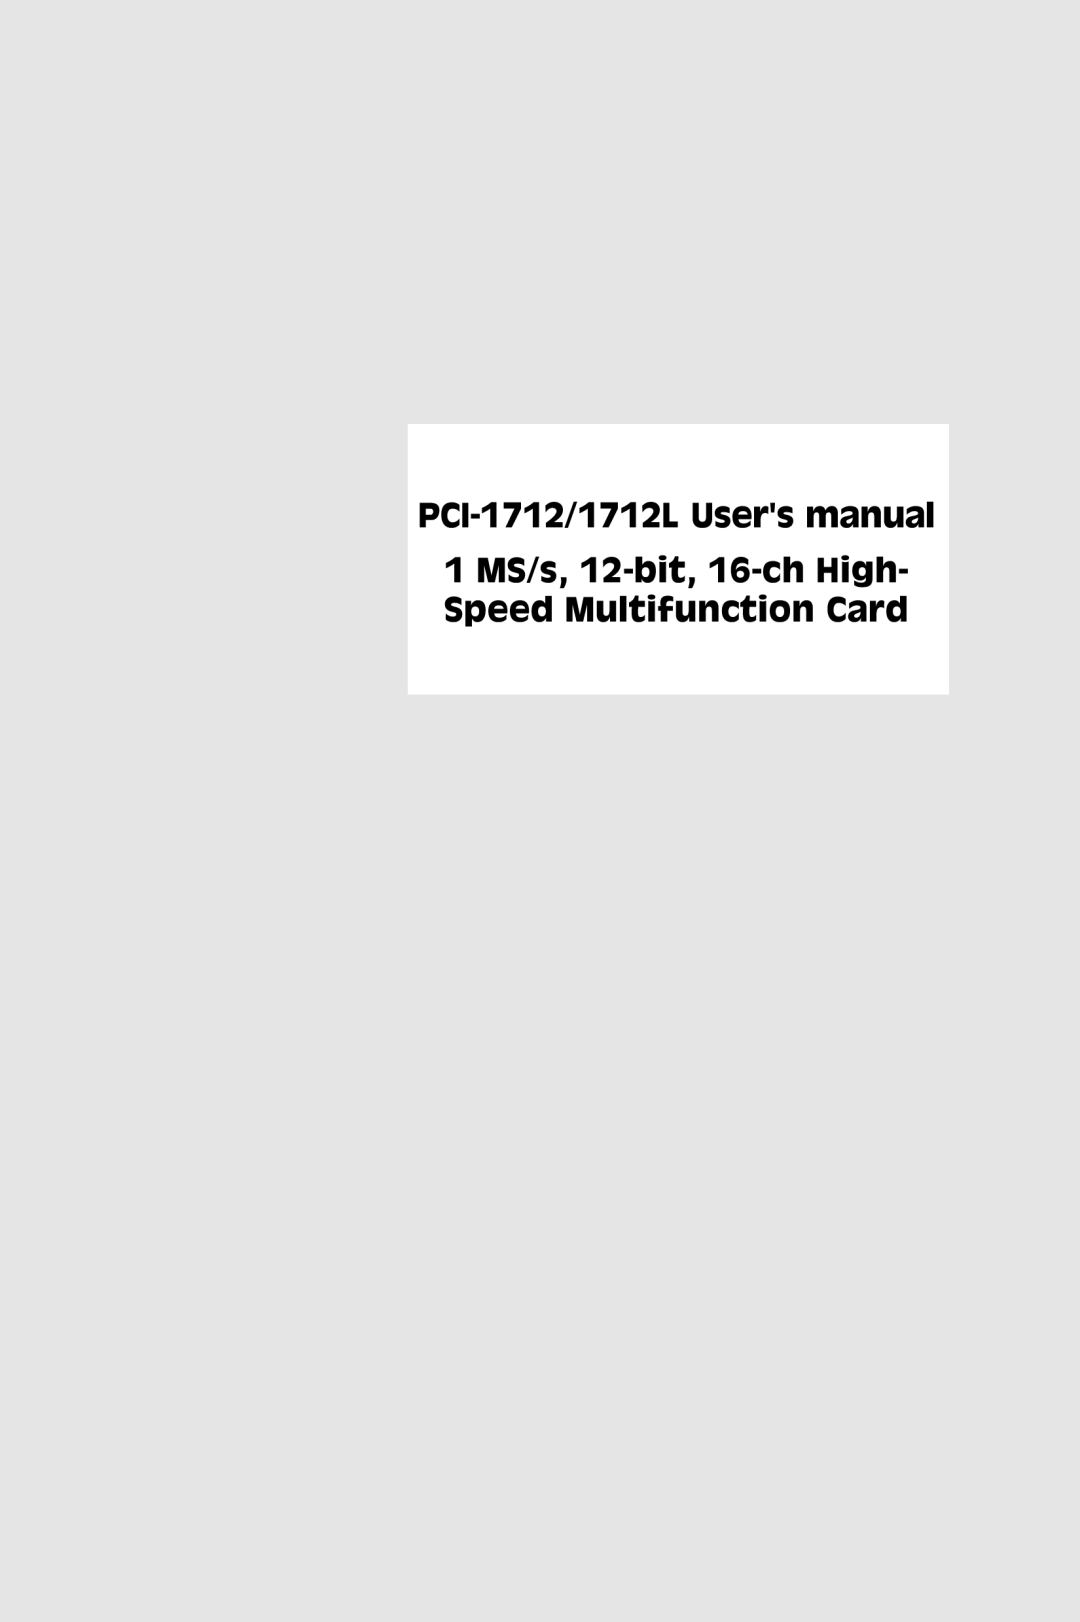 Konica Minolta PCI-1712L user manual PCI-1712/1712L Users manual, 1 MS/s, 12-bit, 16-ch High- Speed Multifunction Card 